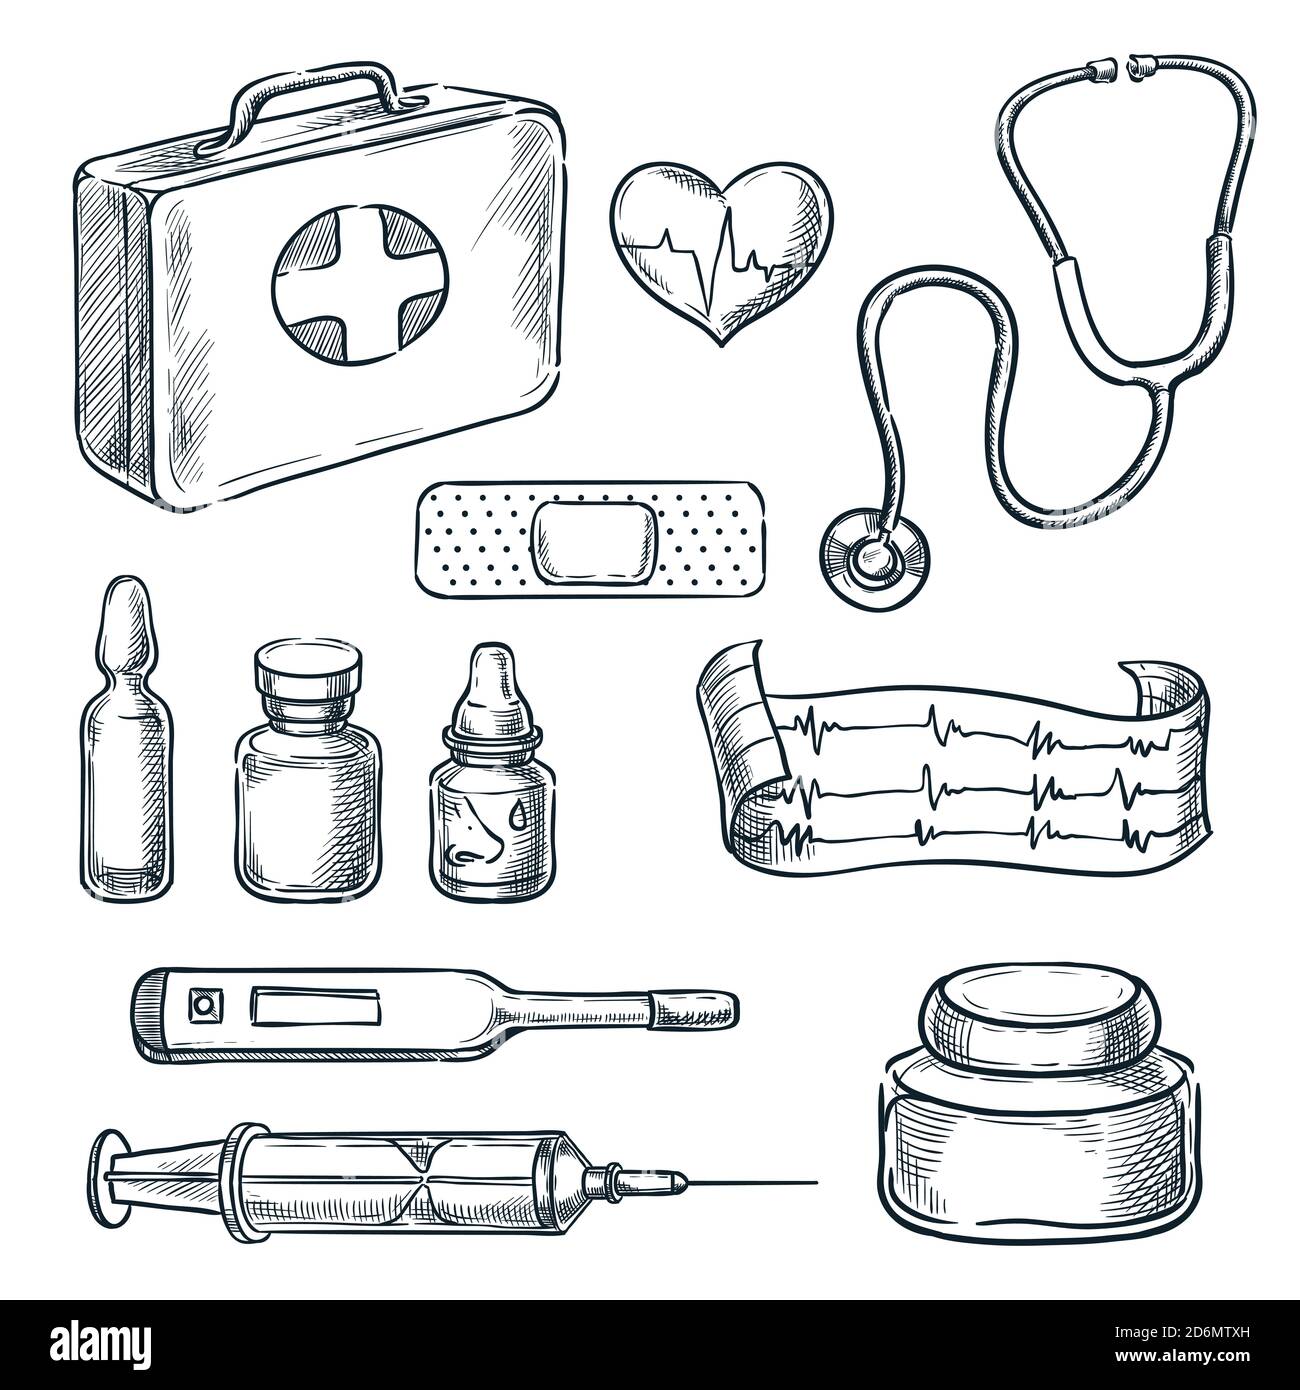 Erste-Hilfe-Set Vektorgrafik. Medizin und Gesundheitswesen handgezeichnete Symbole und Designelemente. Stock Vektor